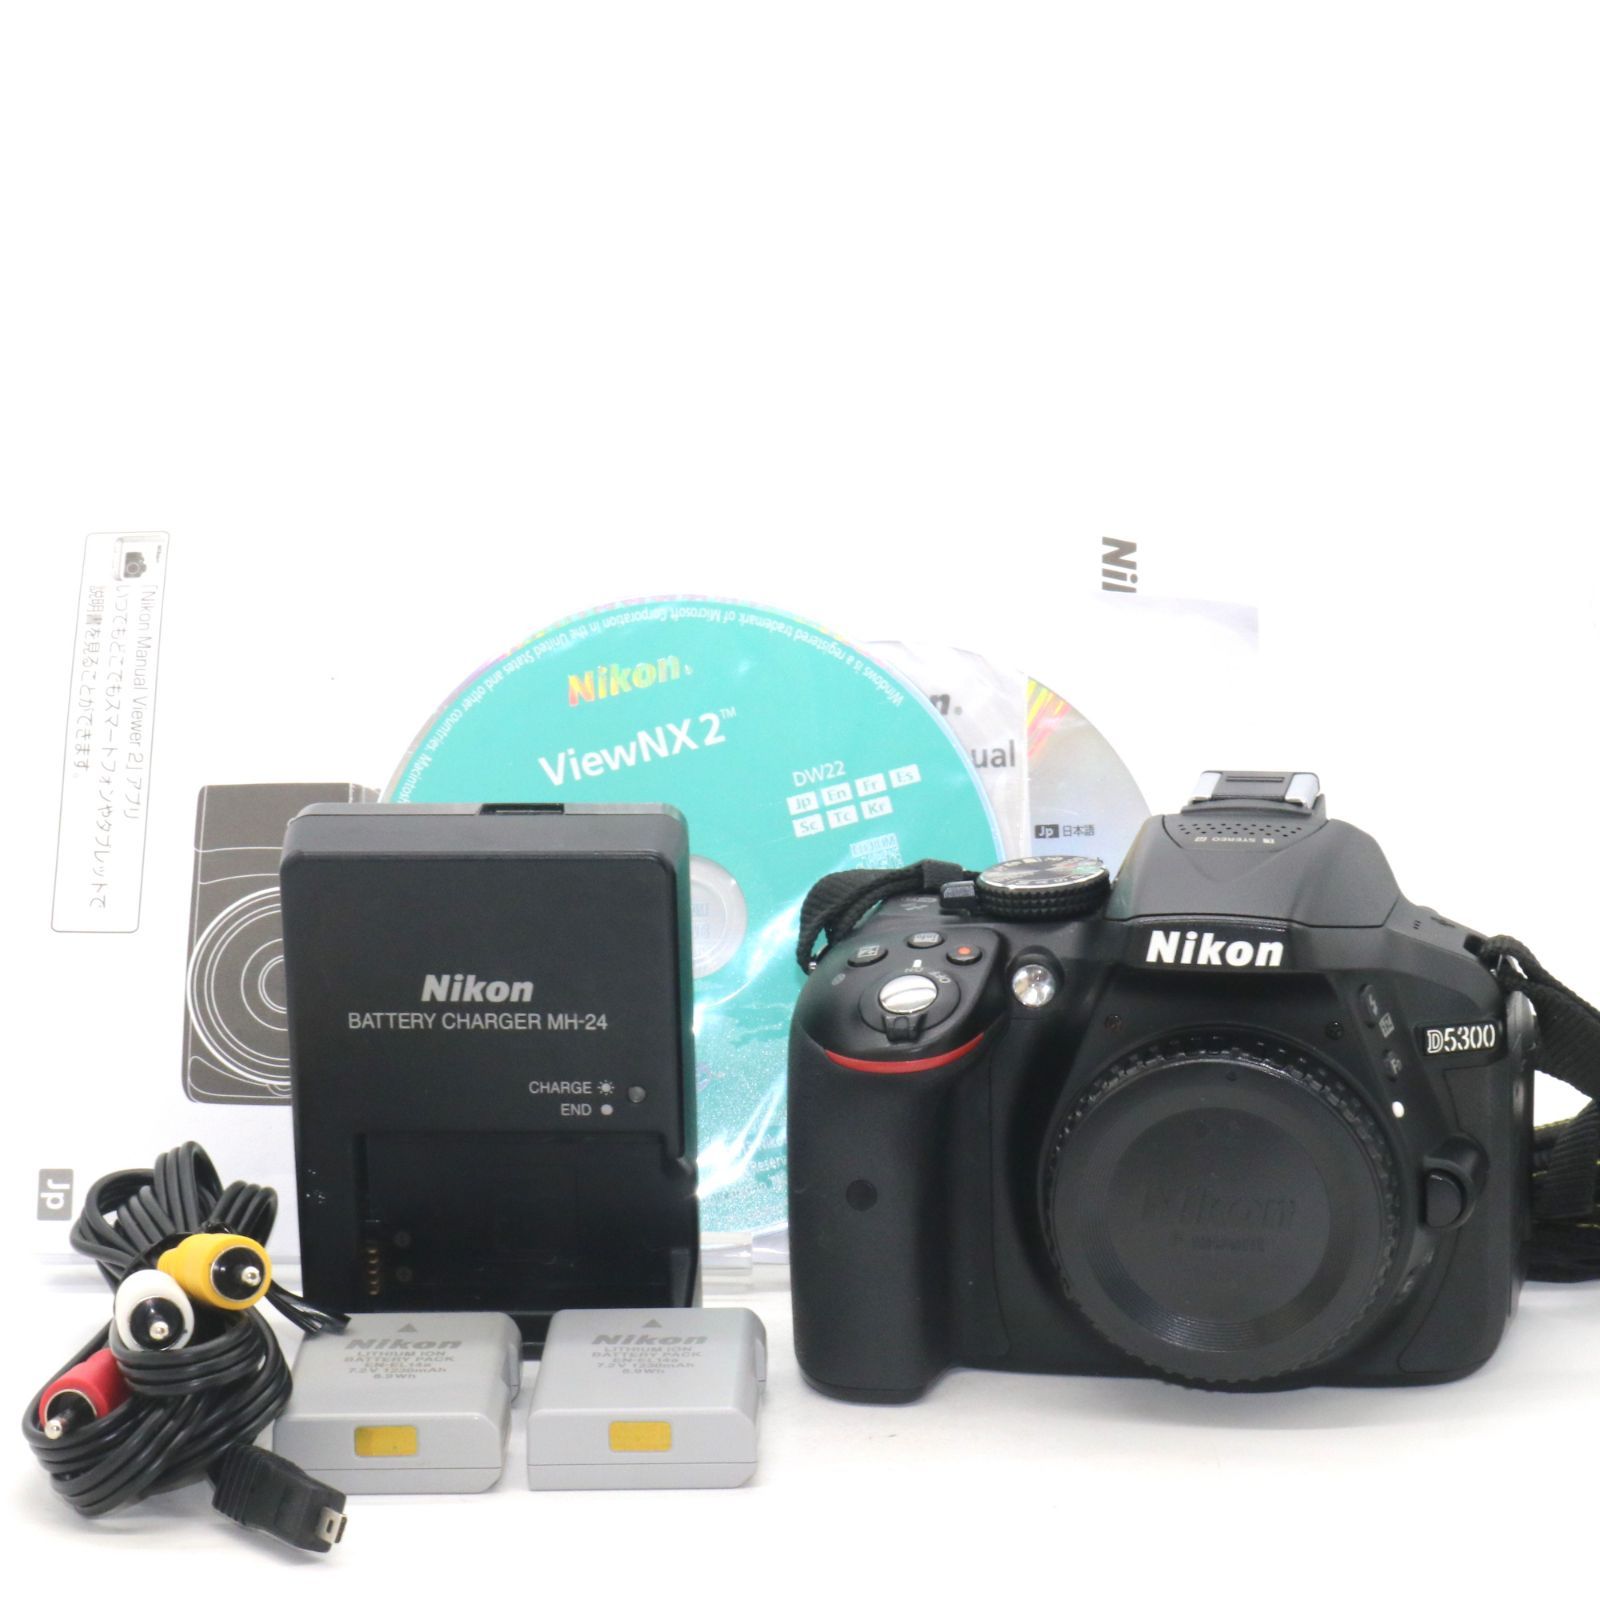 良品 4157ショット 予備バッテリー付き Nikon デジタル一眼レフカメラ D5300 ブラック 2400万画素 3.2型液晶 D5300BK  PitchCam 一部の商品で発送遅延中 メルカリ